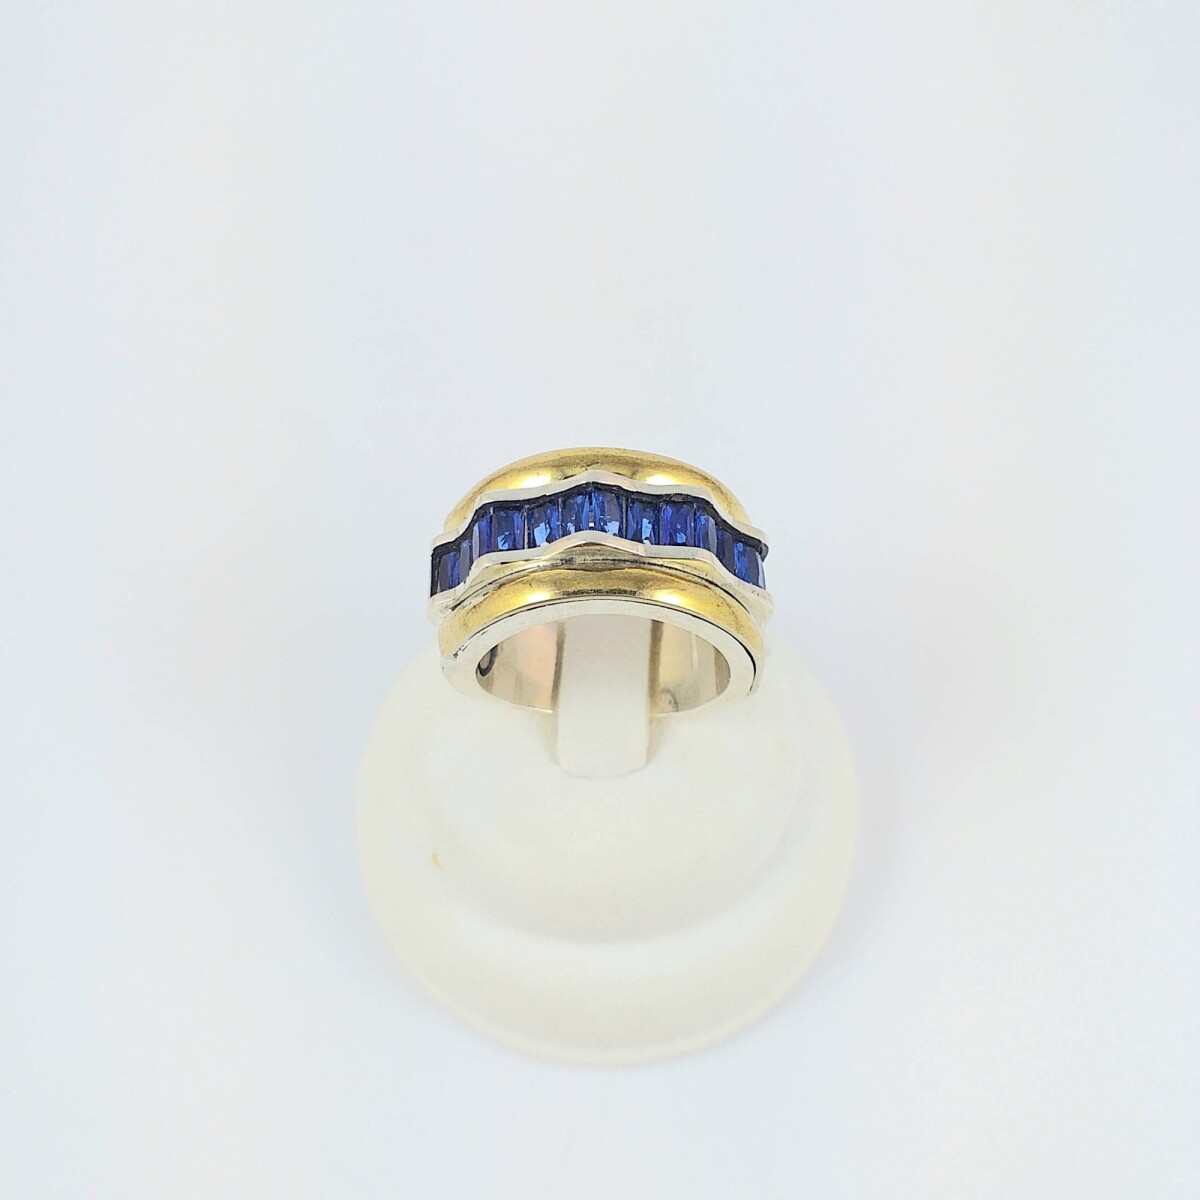 Anillo de plata 925 con detalle de doublé en oro 18K y circonias azul. Medidas diámetro interno 17mm, ancho 1.2cm #14. 